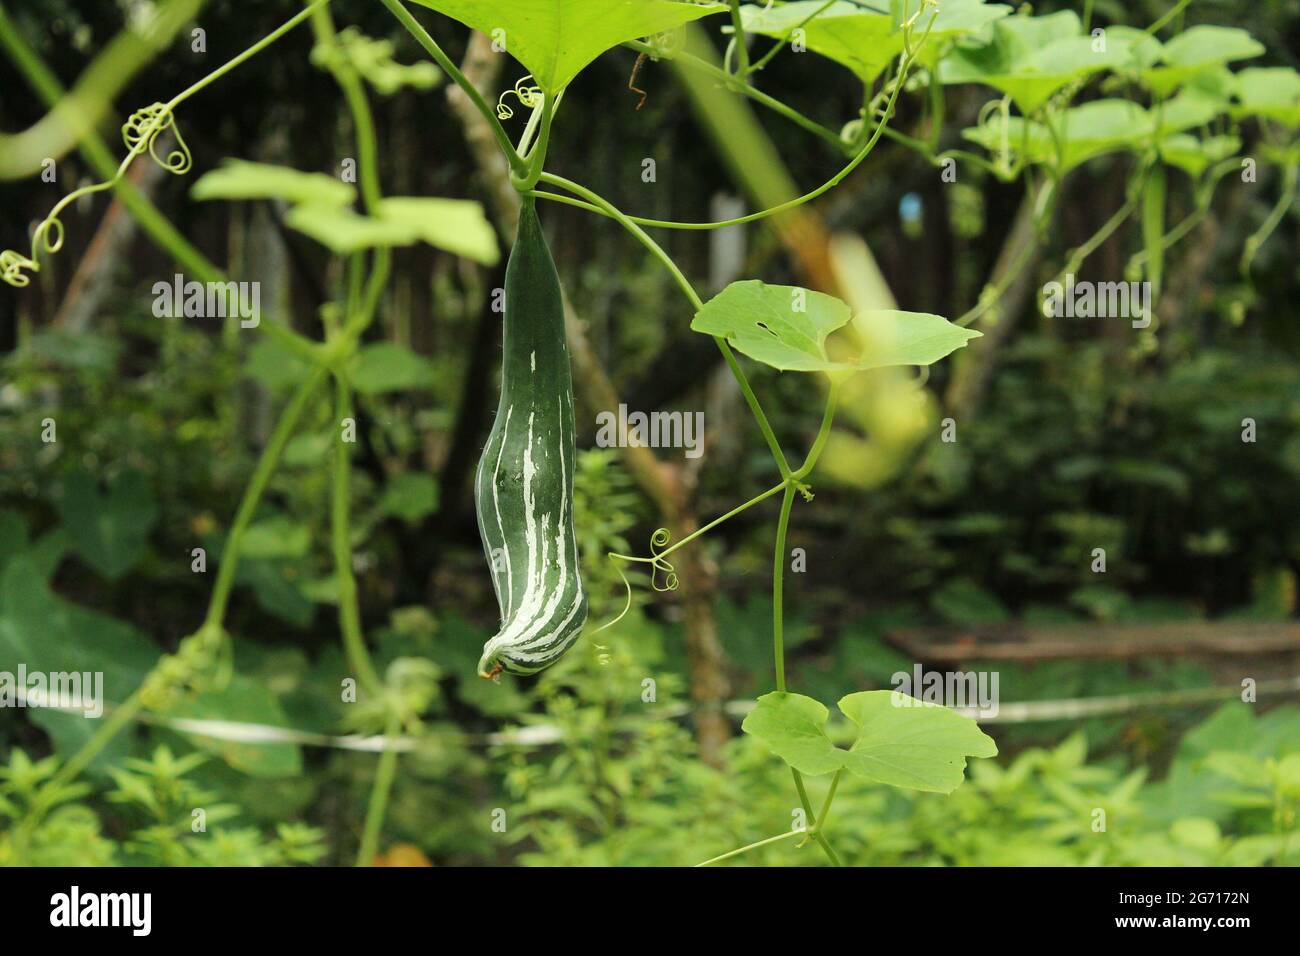 Zucca di serpente su pianta, Trichosanthes cucumerina è una vite tropicale o subtropicale. Foto Stock